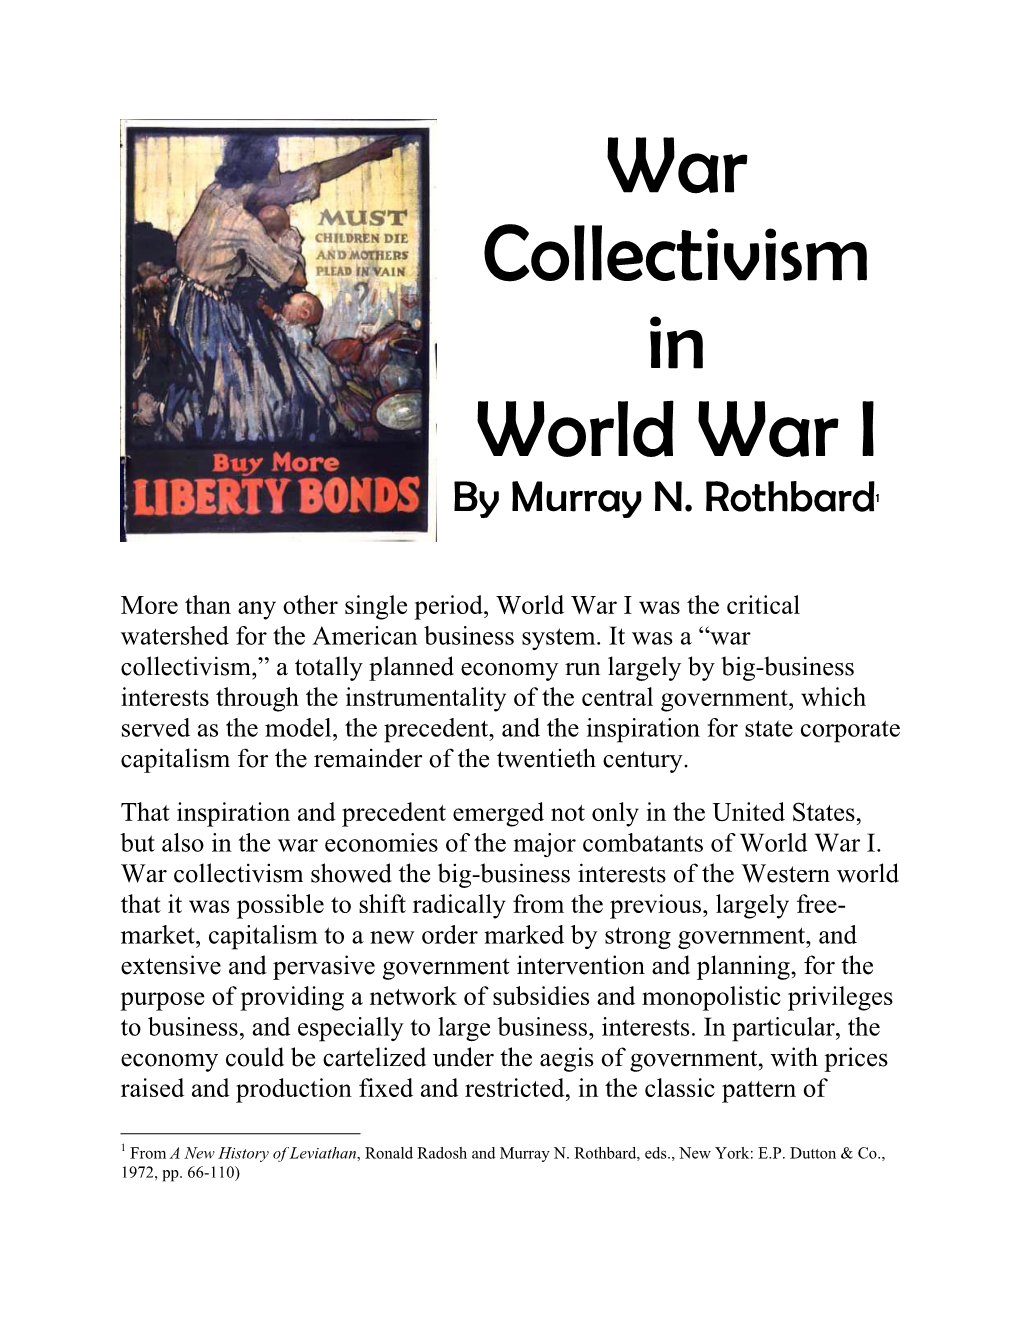 War Collectivism in World War I